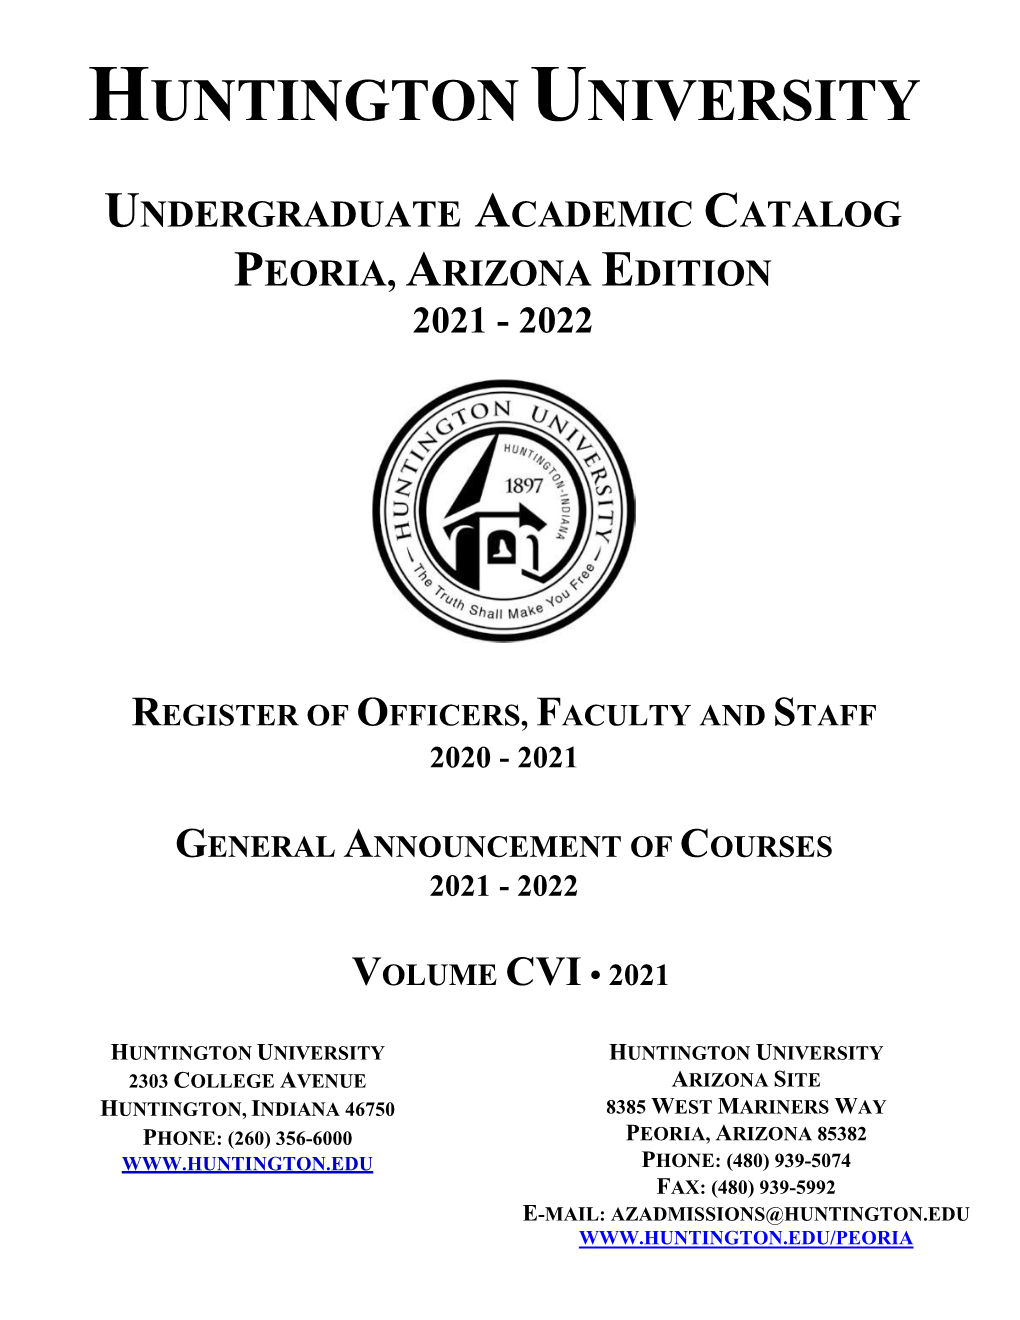 Undergraduate Academic Catalog Peoria, Arizona Edition 2021 - 2022